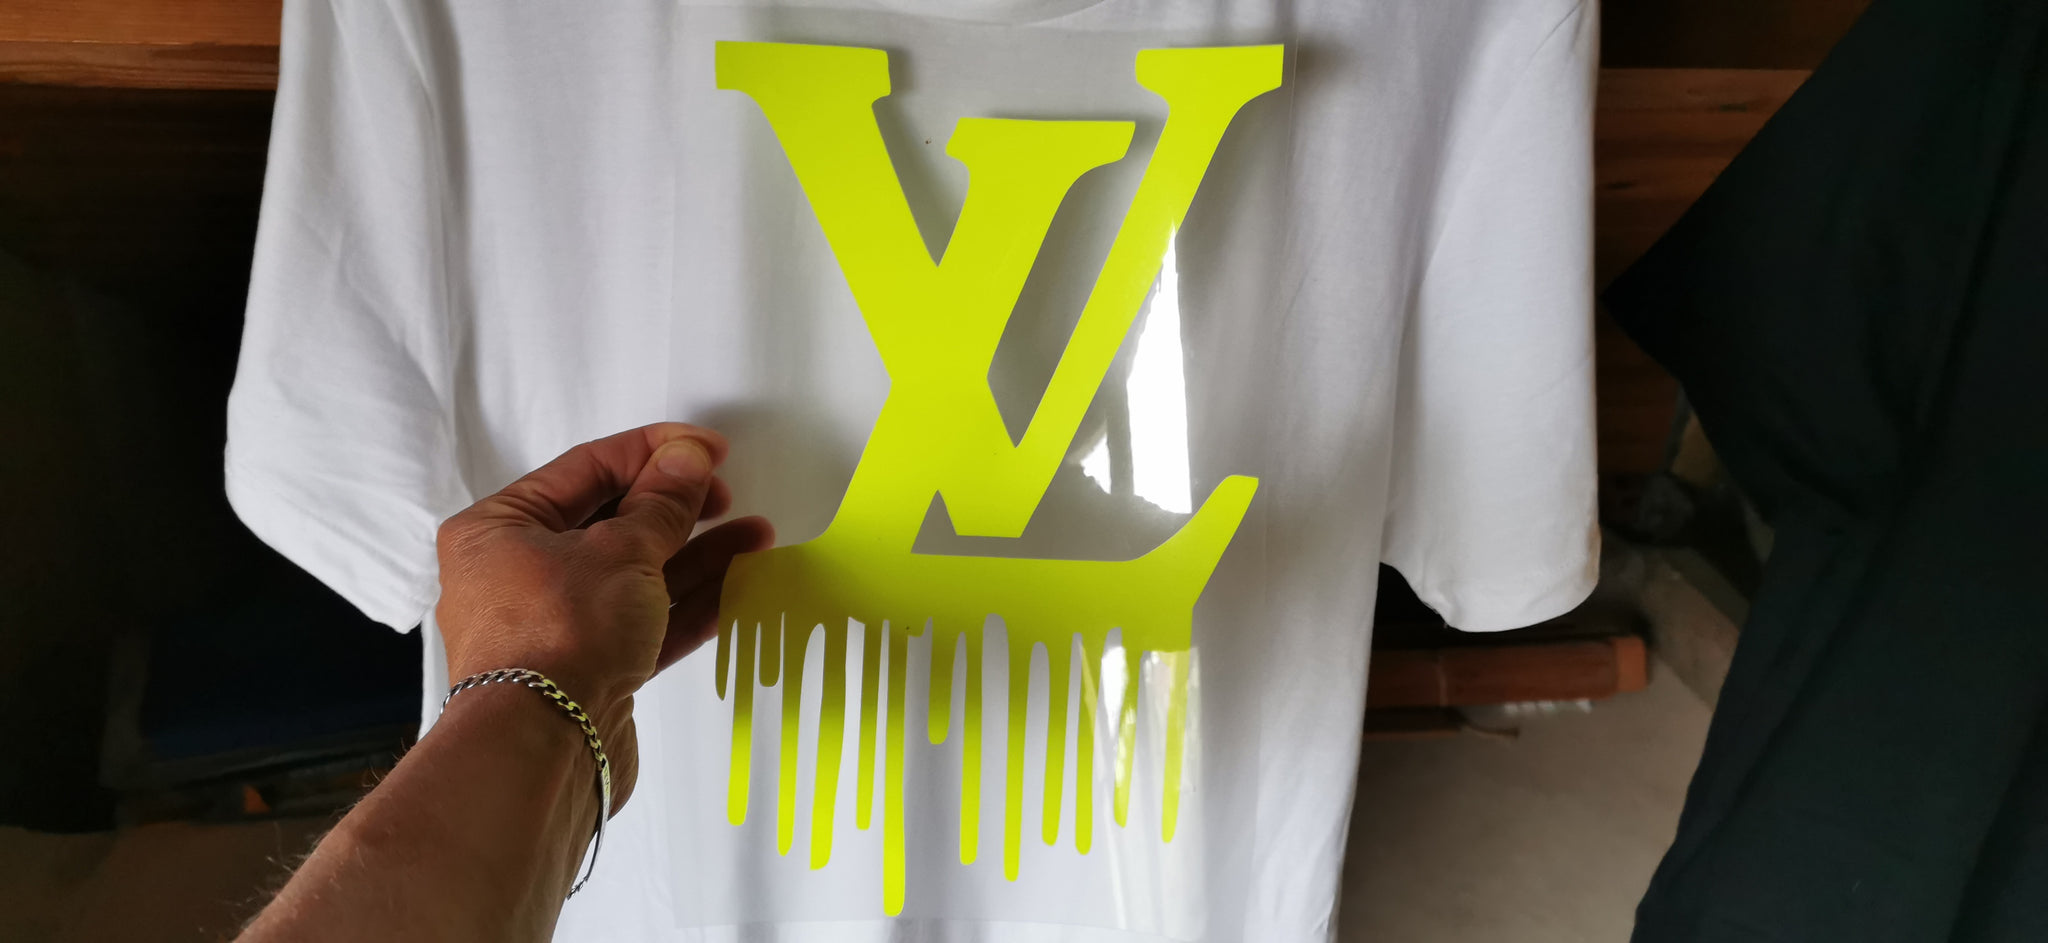 Dripping LV Logo - LogoDix